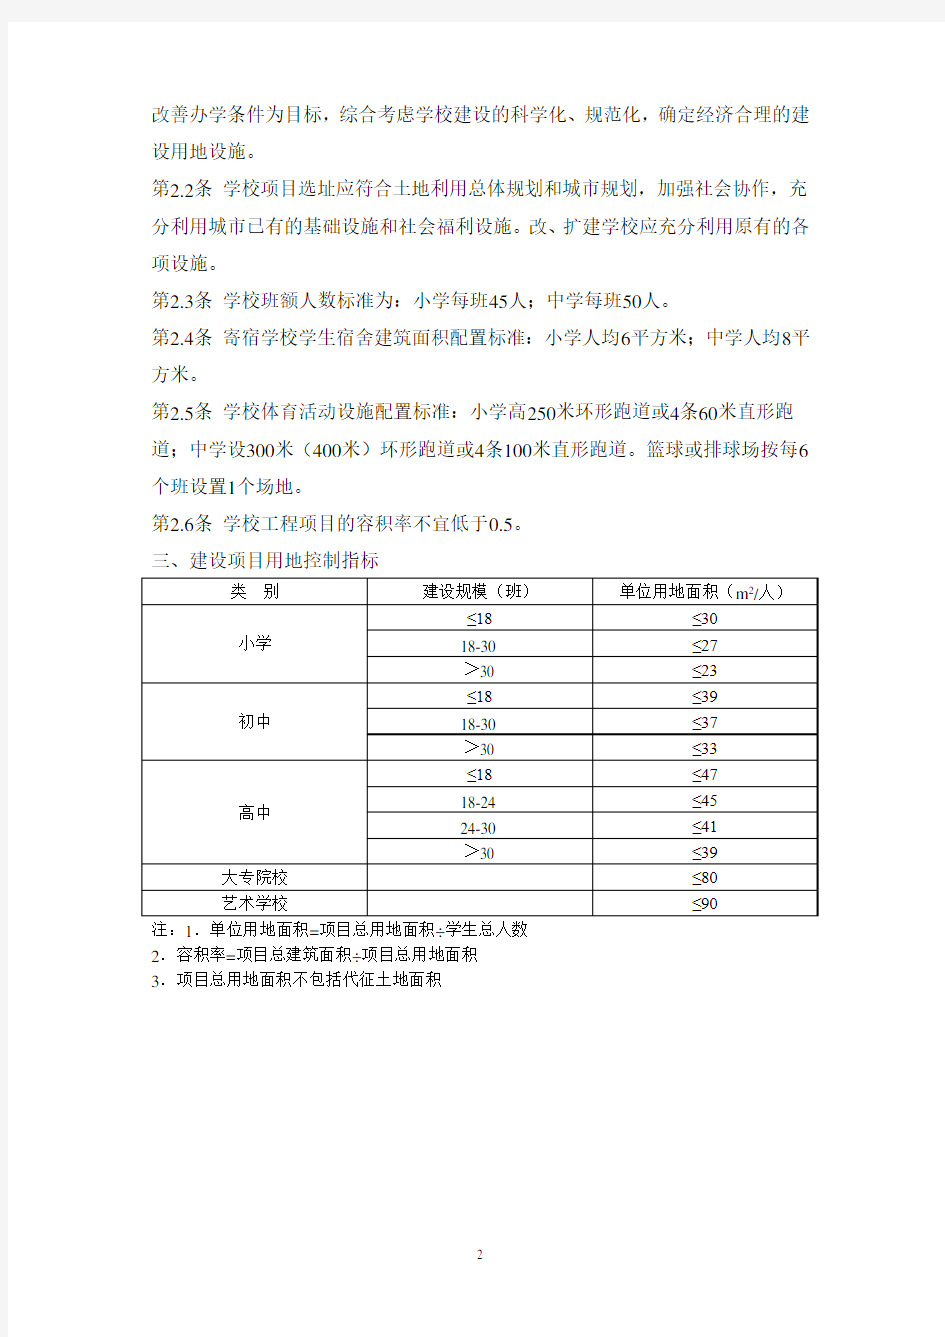 浙江省学校建设项目用地控制指标